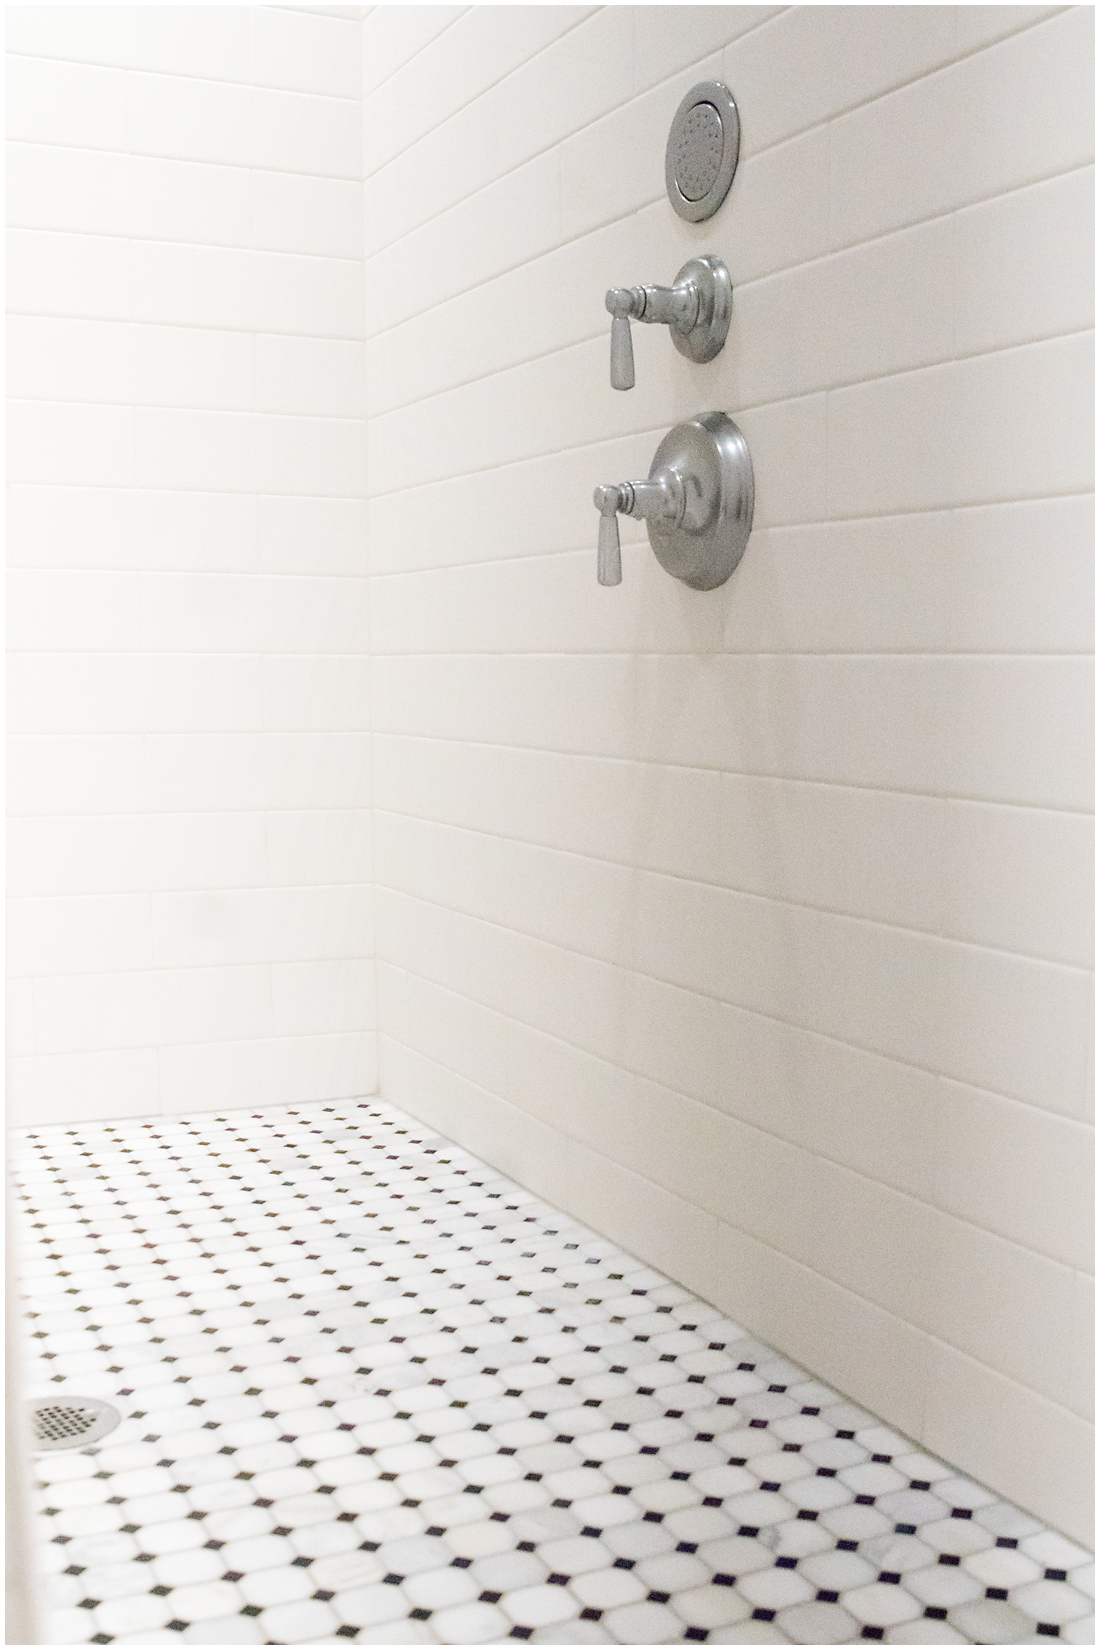 Custom Shower Tile